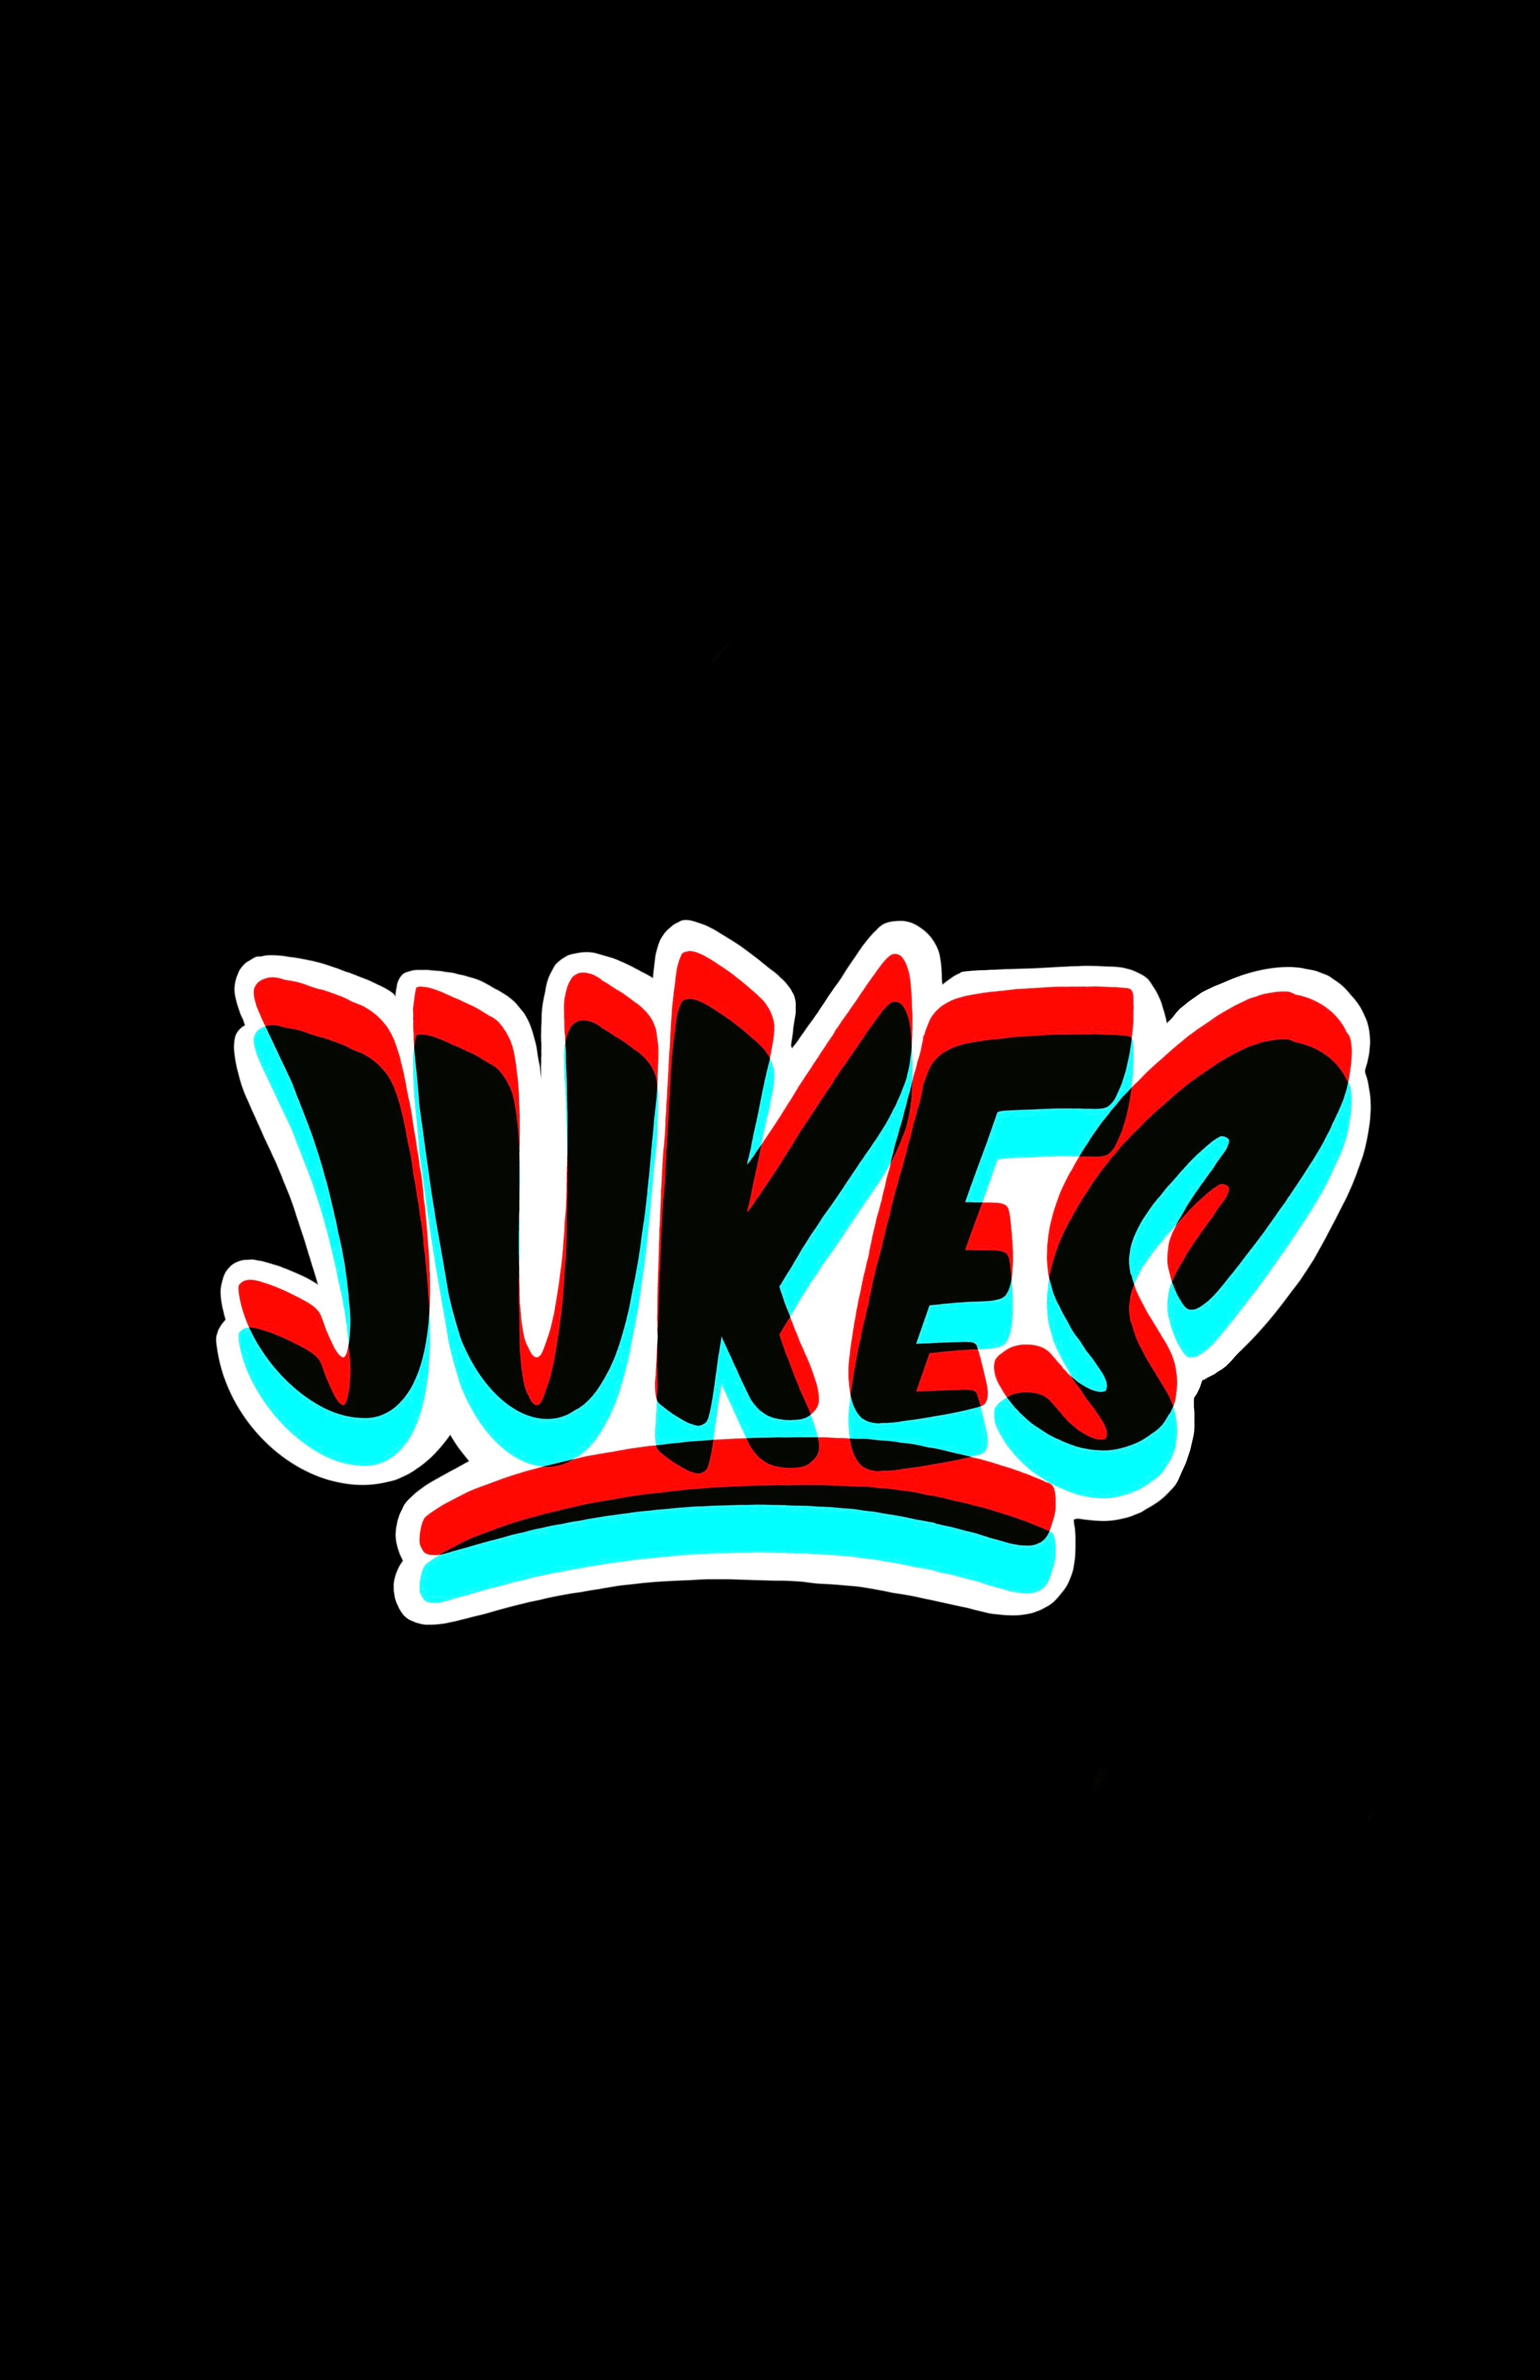 JUKES banner